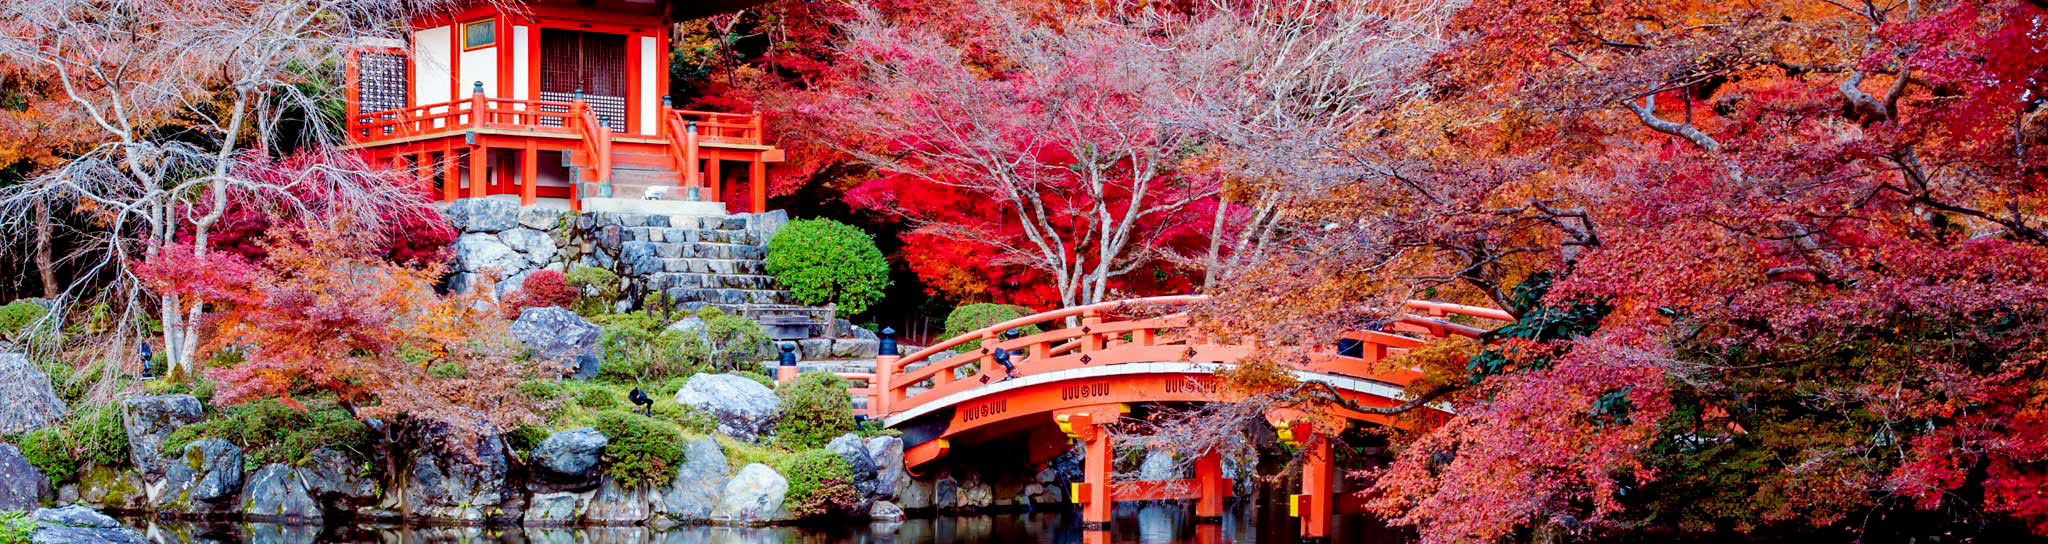 paysage japonais avec un pont et un petit temple avec des arbres à l'automne dans les tons rouge